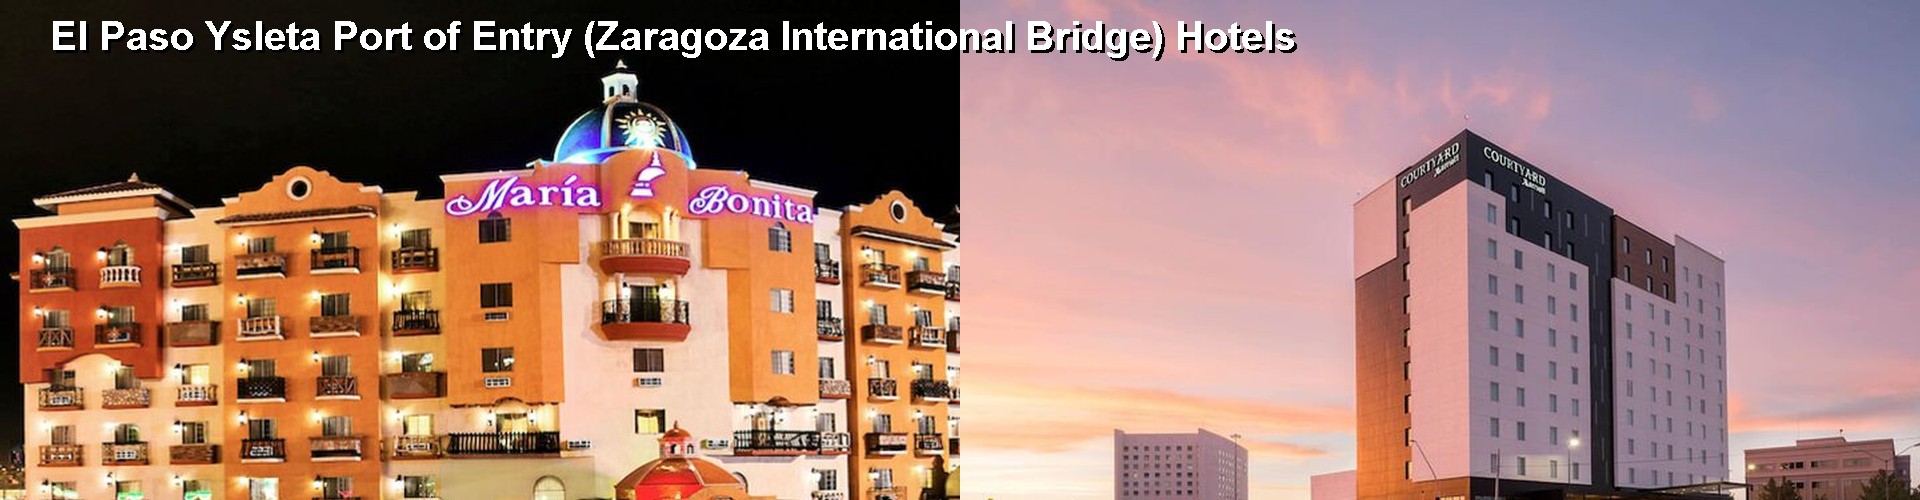 5 Best Hotels near El Paso Ysleta Port of Entry (Zaragoza International Bridge)